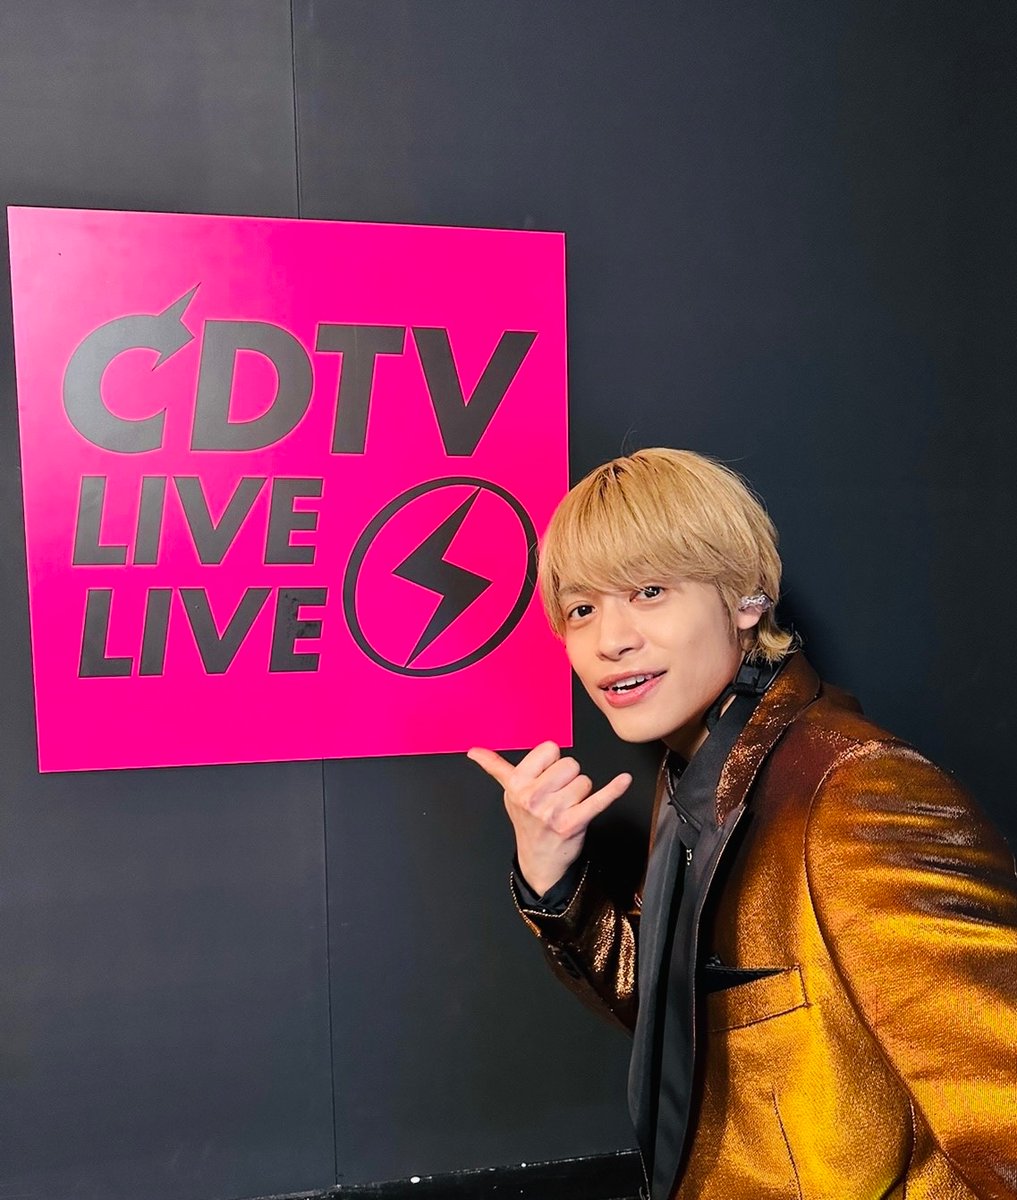 『CDTVライブ！ライブ！』 行ってくるねー！

桐山のぶんまで頑張ってくる！
見ててね(*´-`)